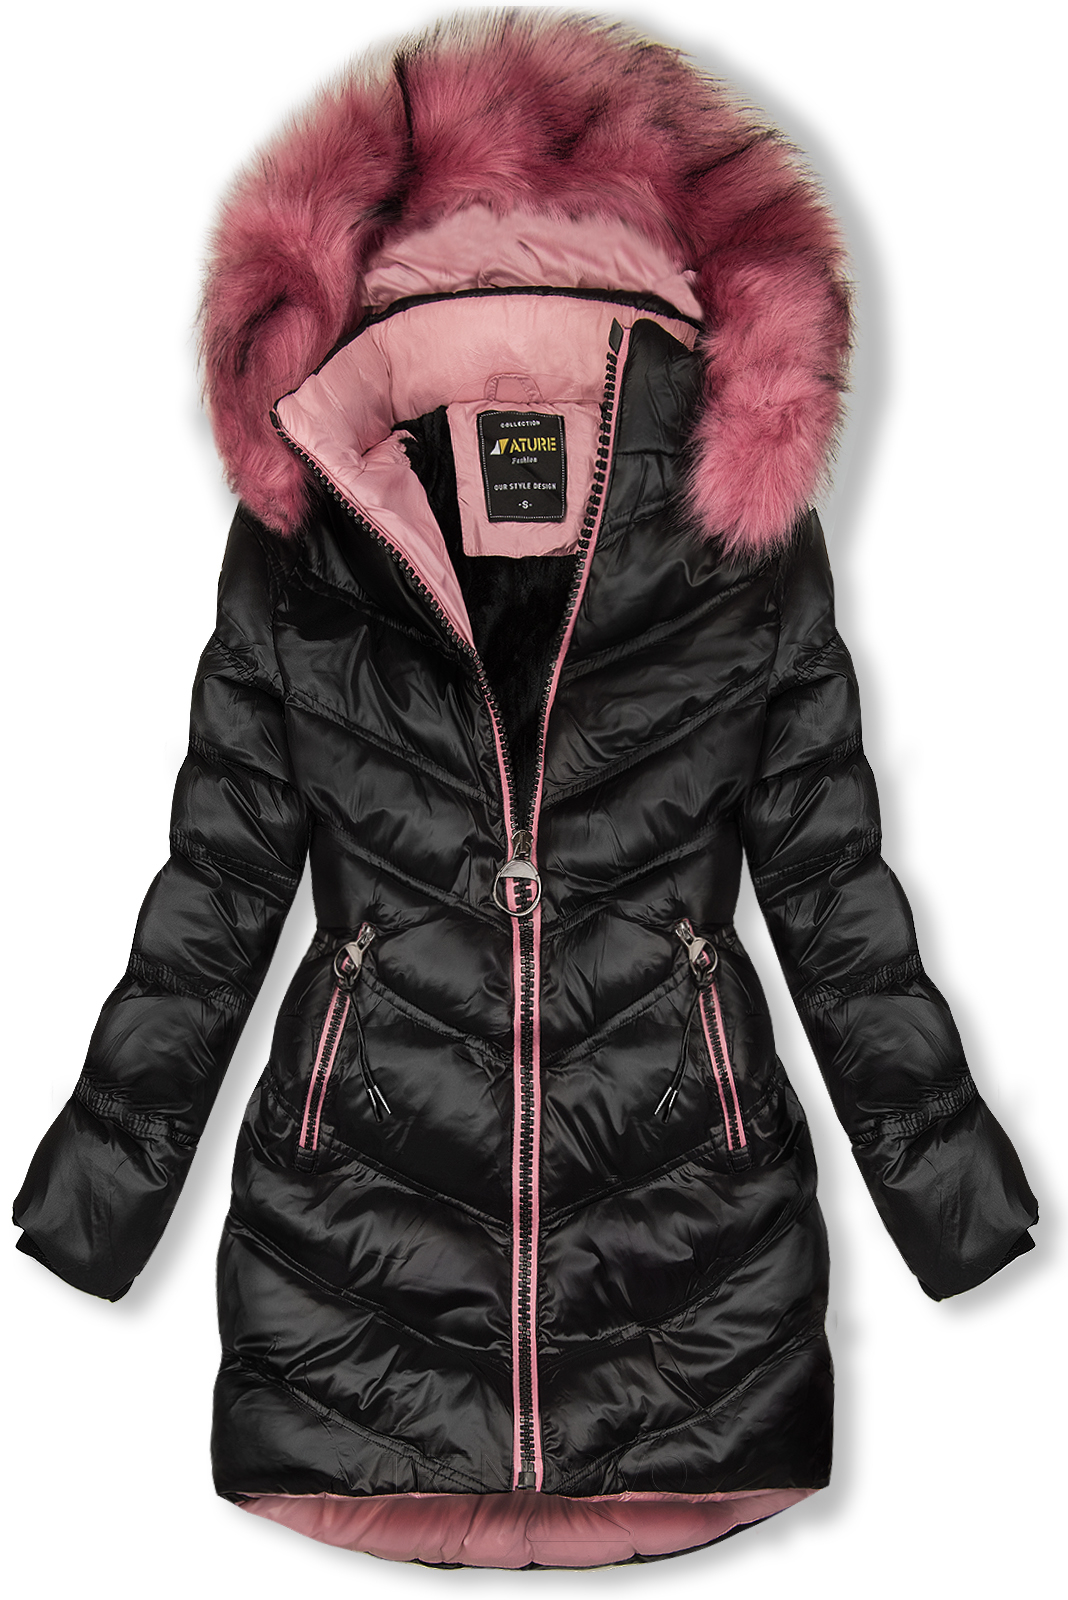 Černo-růžová bunda s kontrastním lemováním